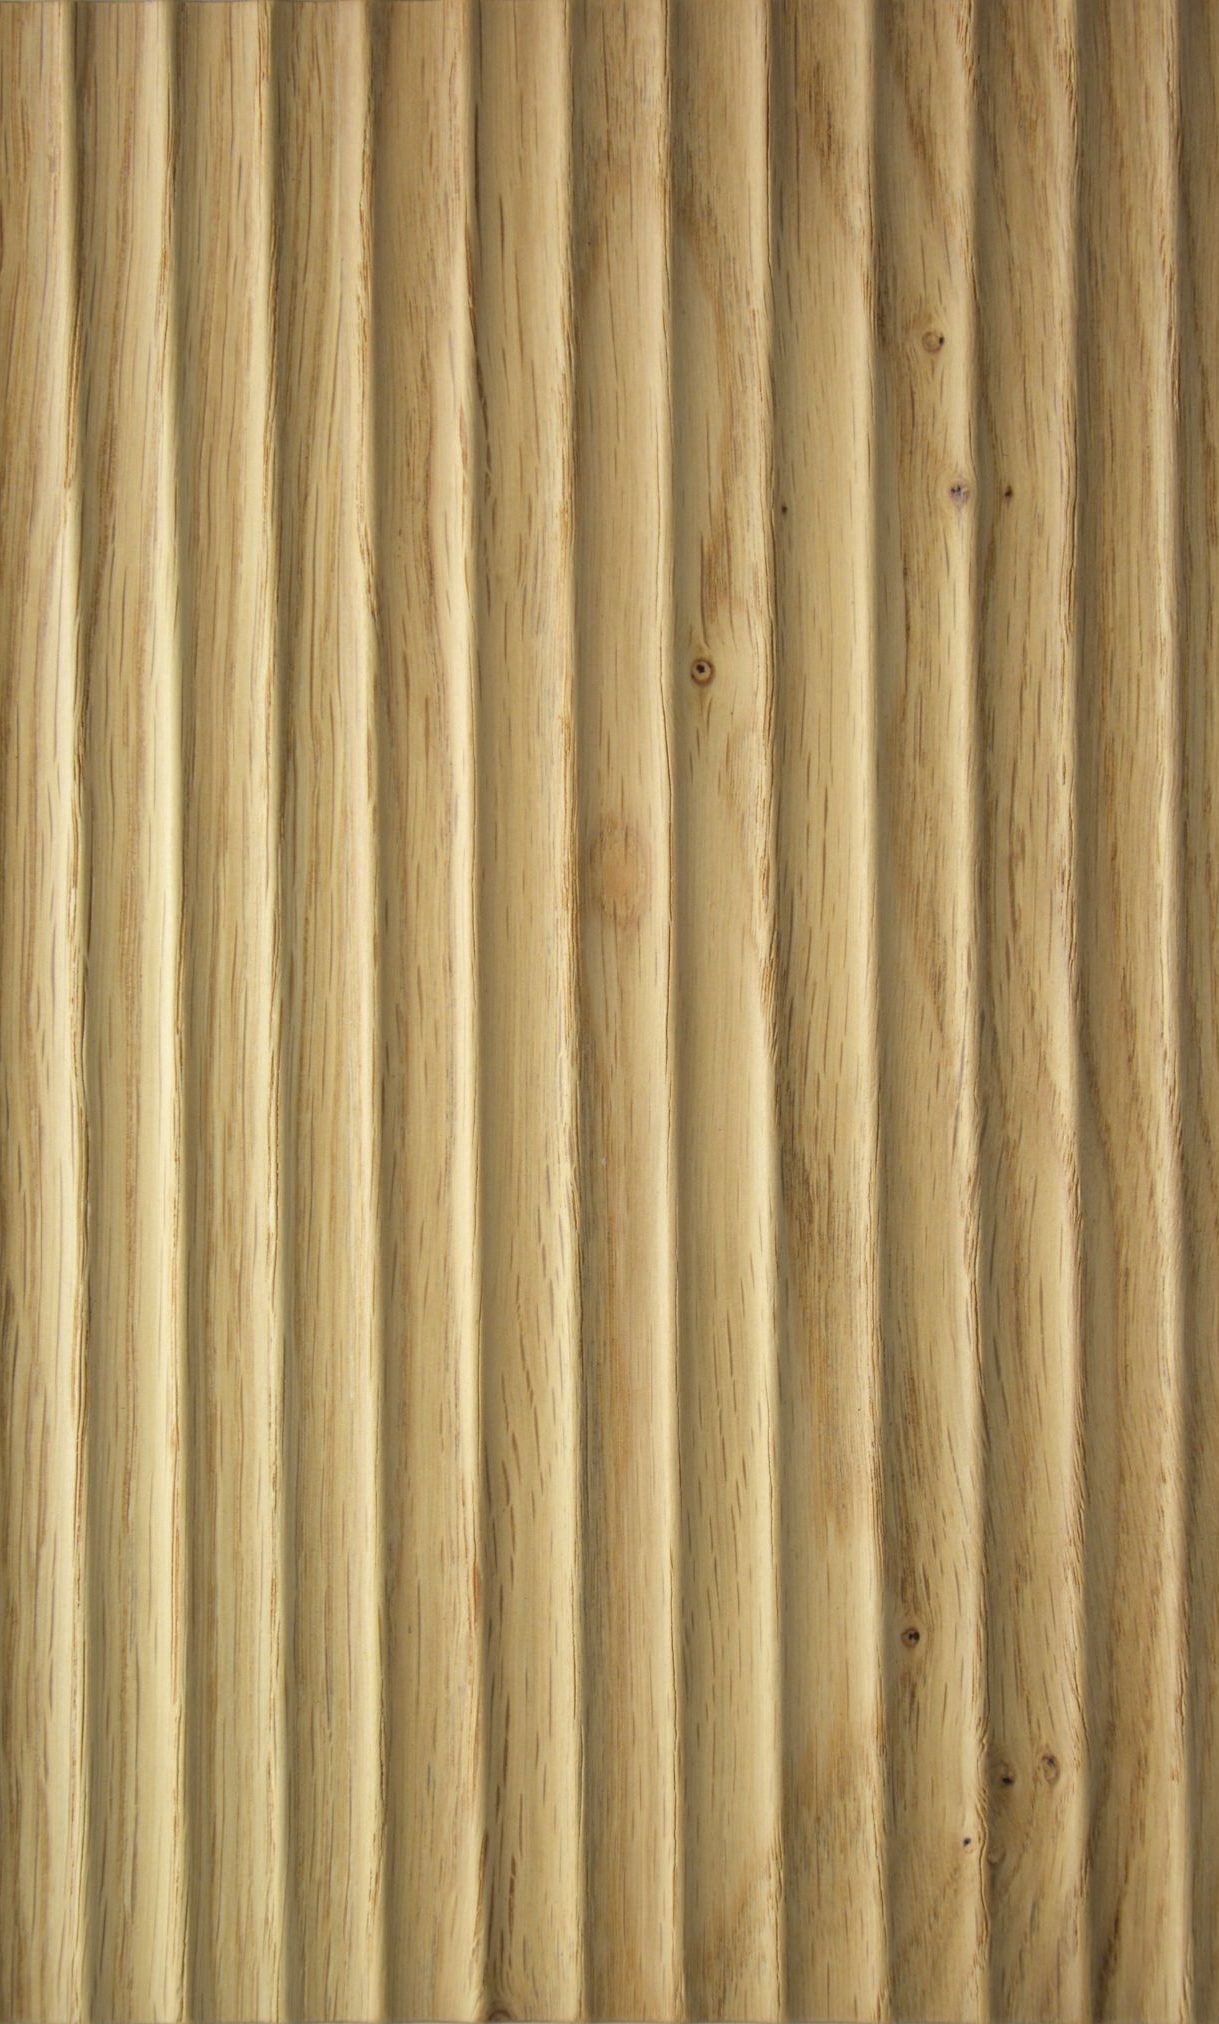 2636 - Cave - Knob Oak - Real wood veneer